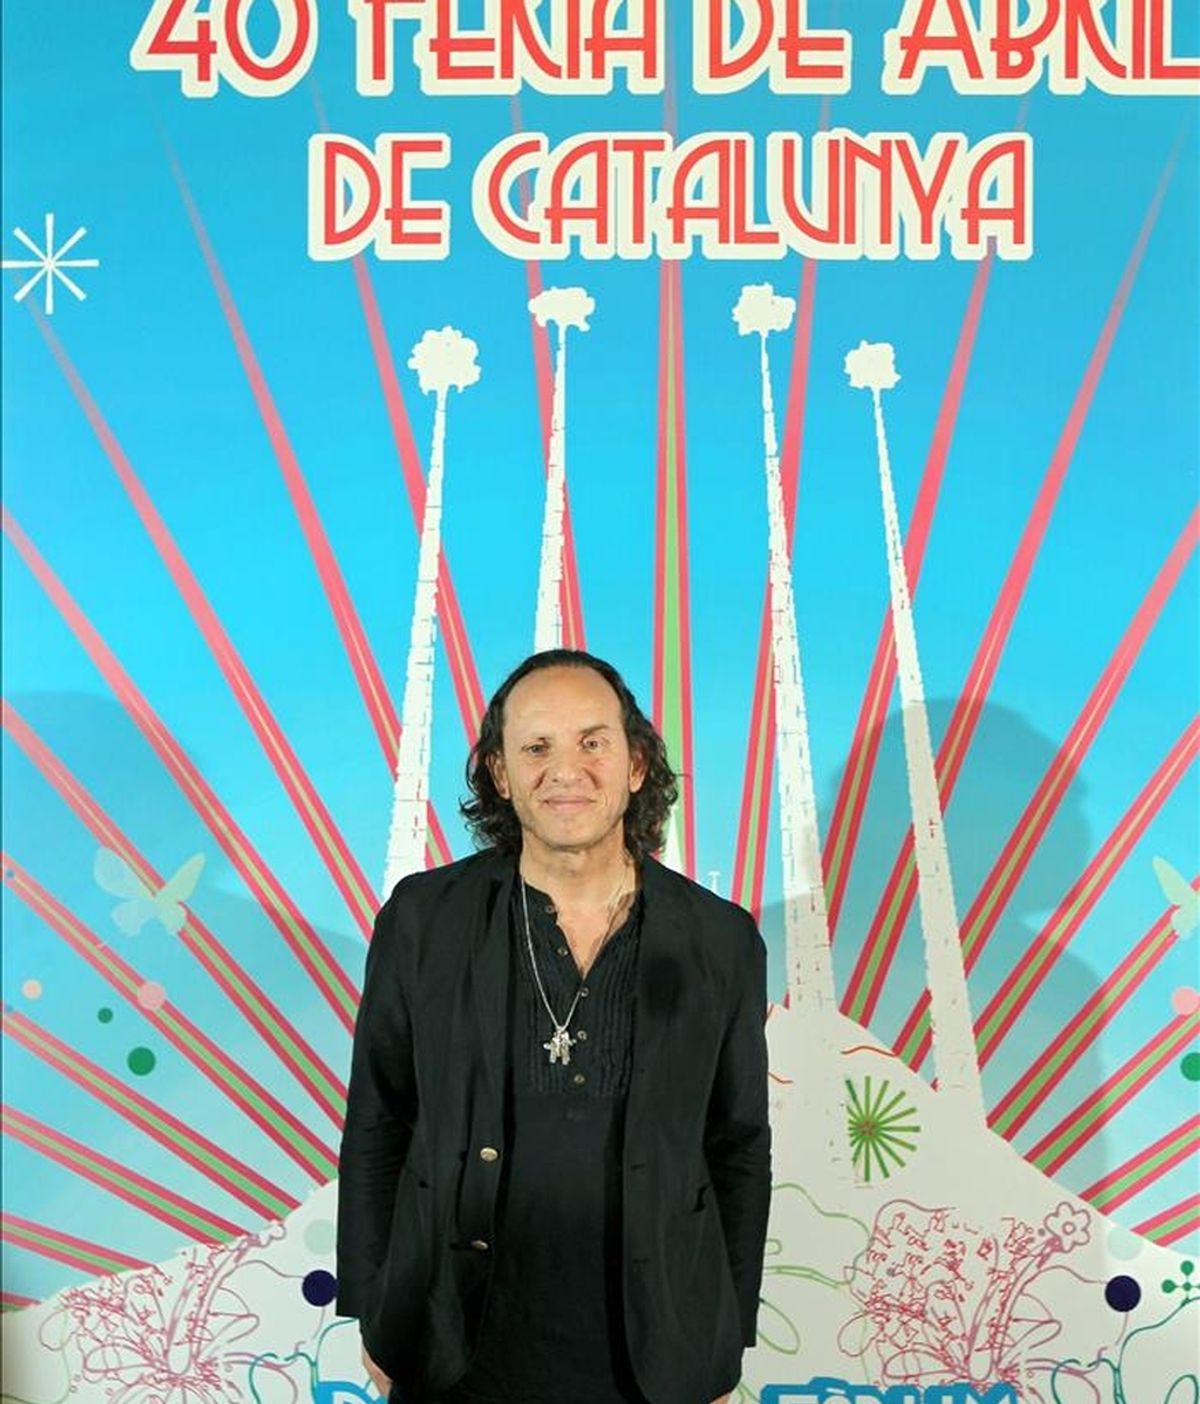 El diseñador de moda, Custo Dalmau, posa ante el cartel que ha diseñado para la Feria de Abril de Cataluña de este año, que tendrá lugar del 29 de abril al 8 de mayo en la explanada del Forum de Barcelona. EFE